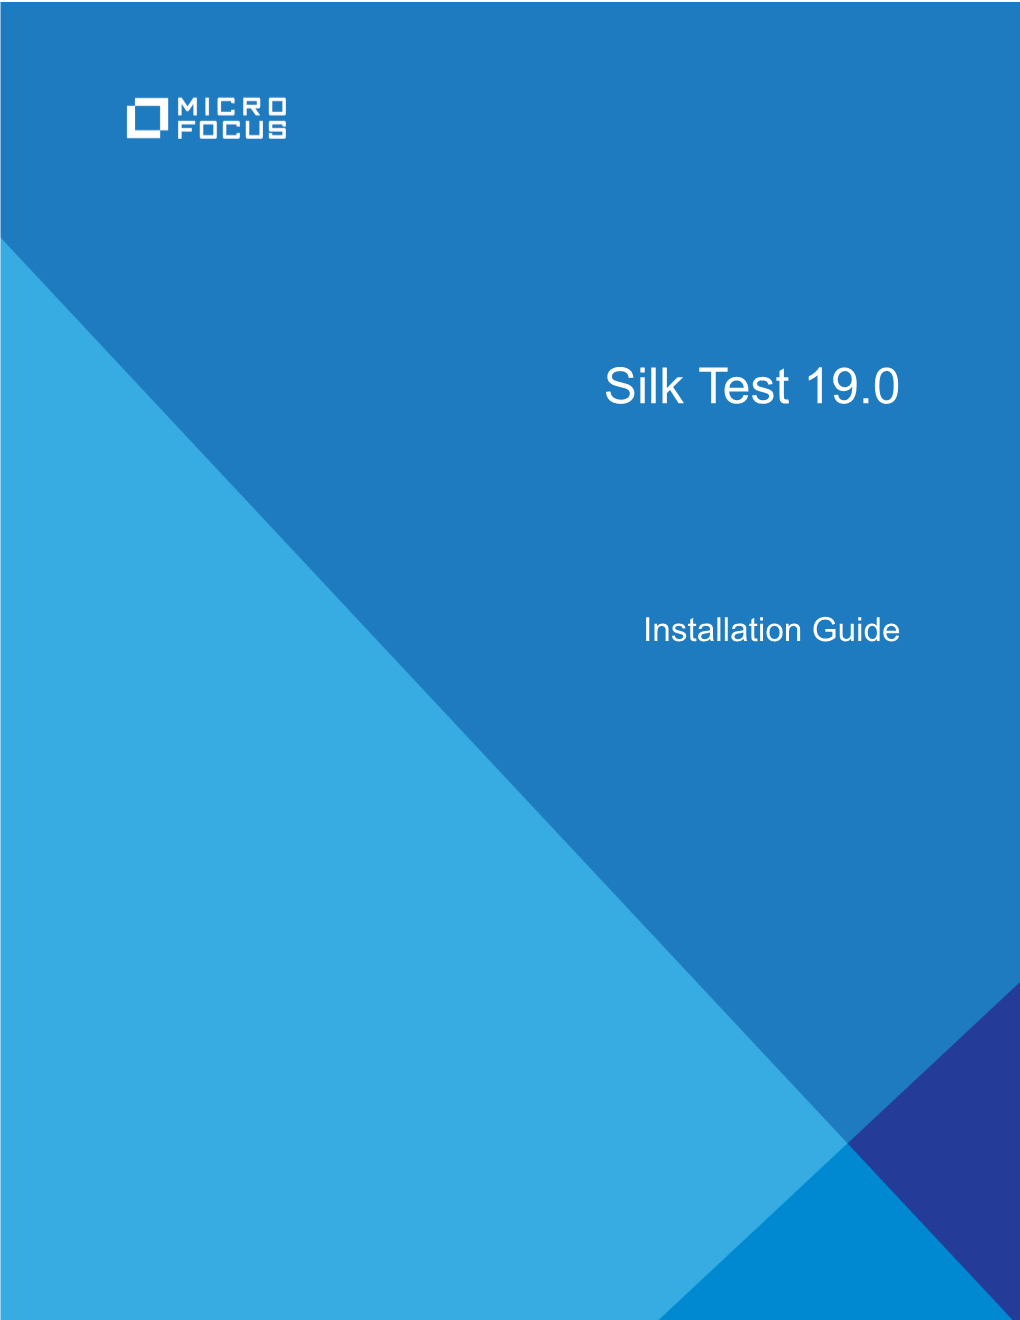 Installing Silk Test